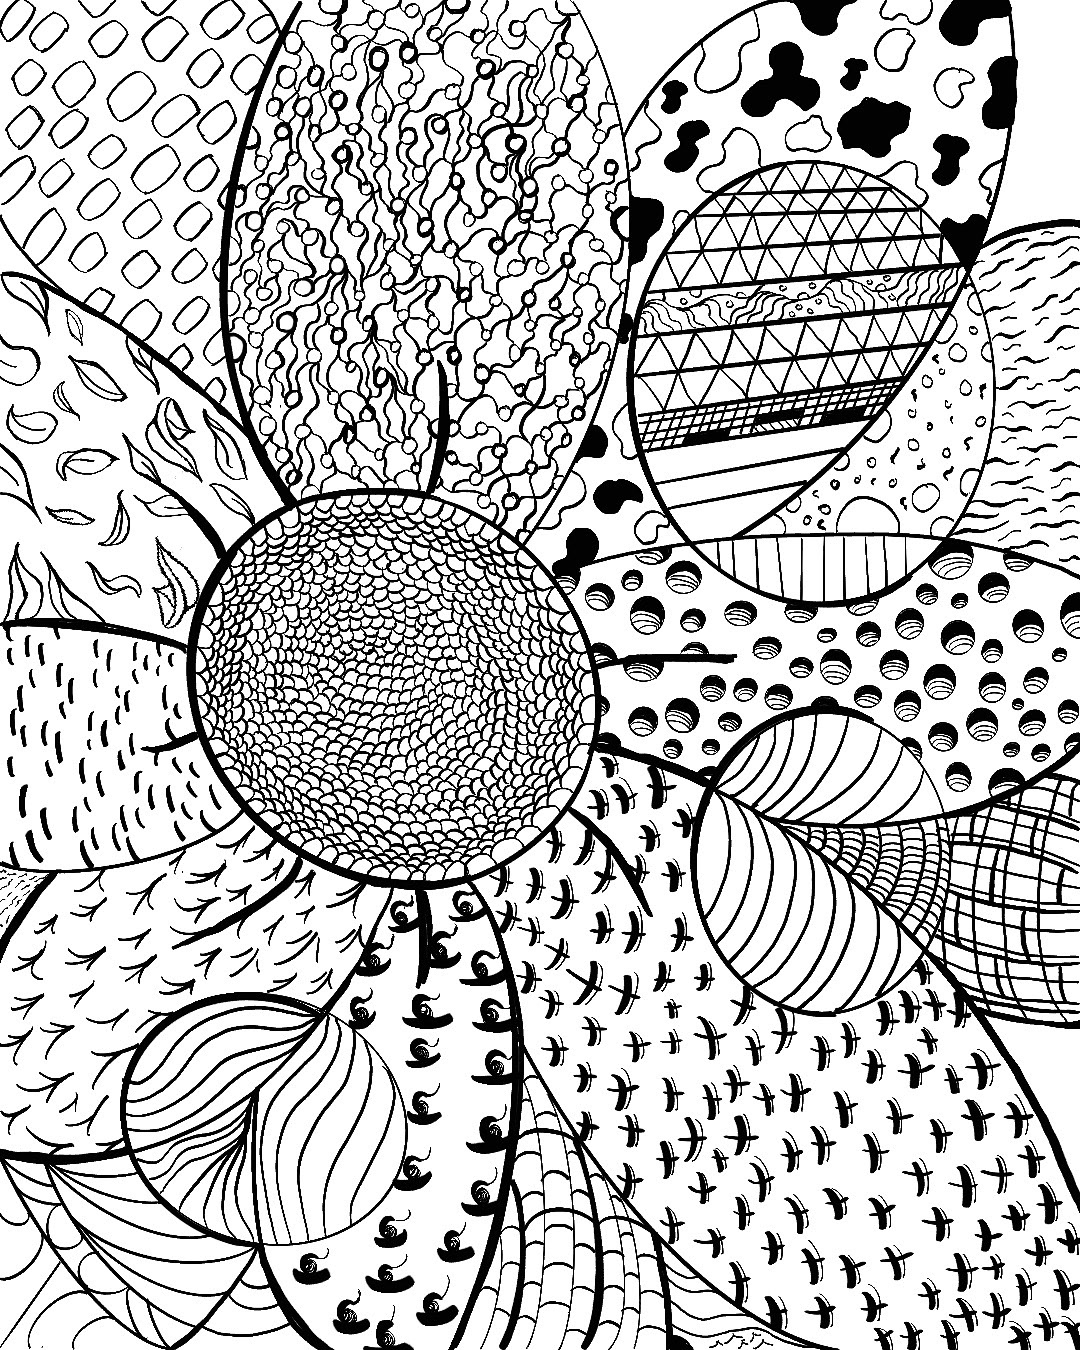 digital illustration doodle art Drawing  artist Digital Art  ILLUSTRATION  floral art